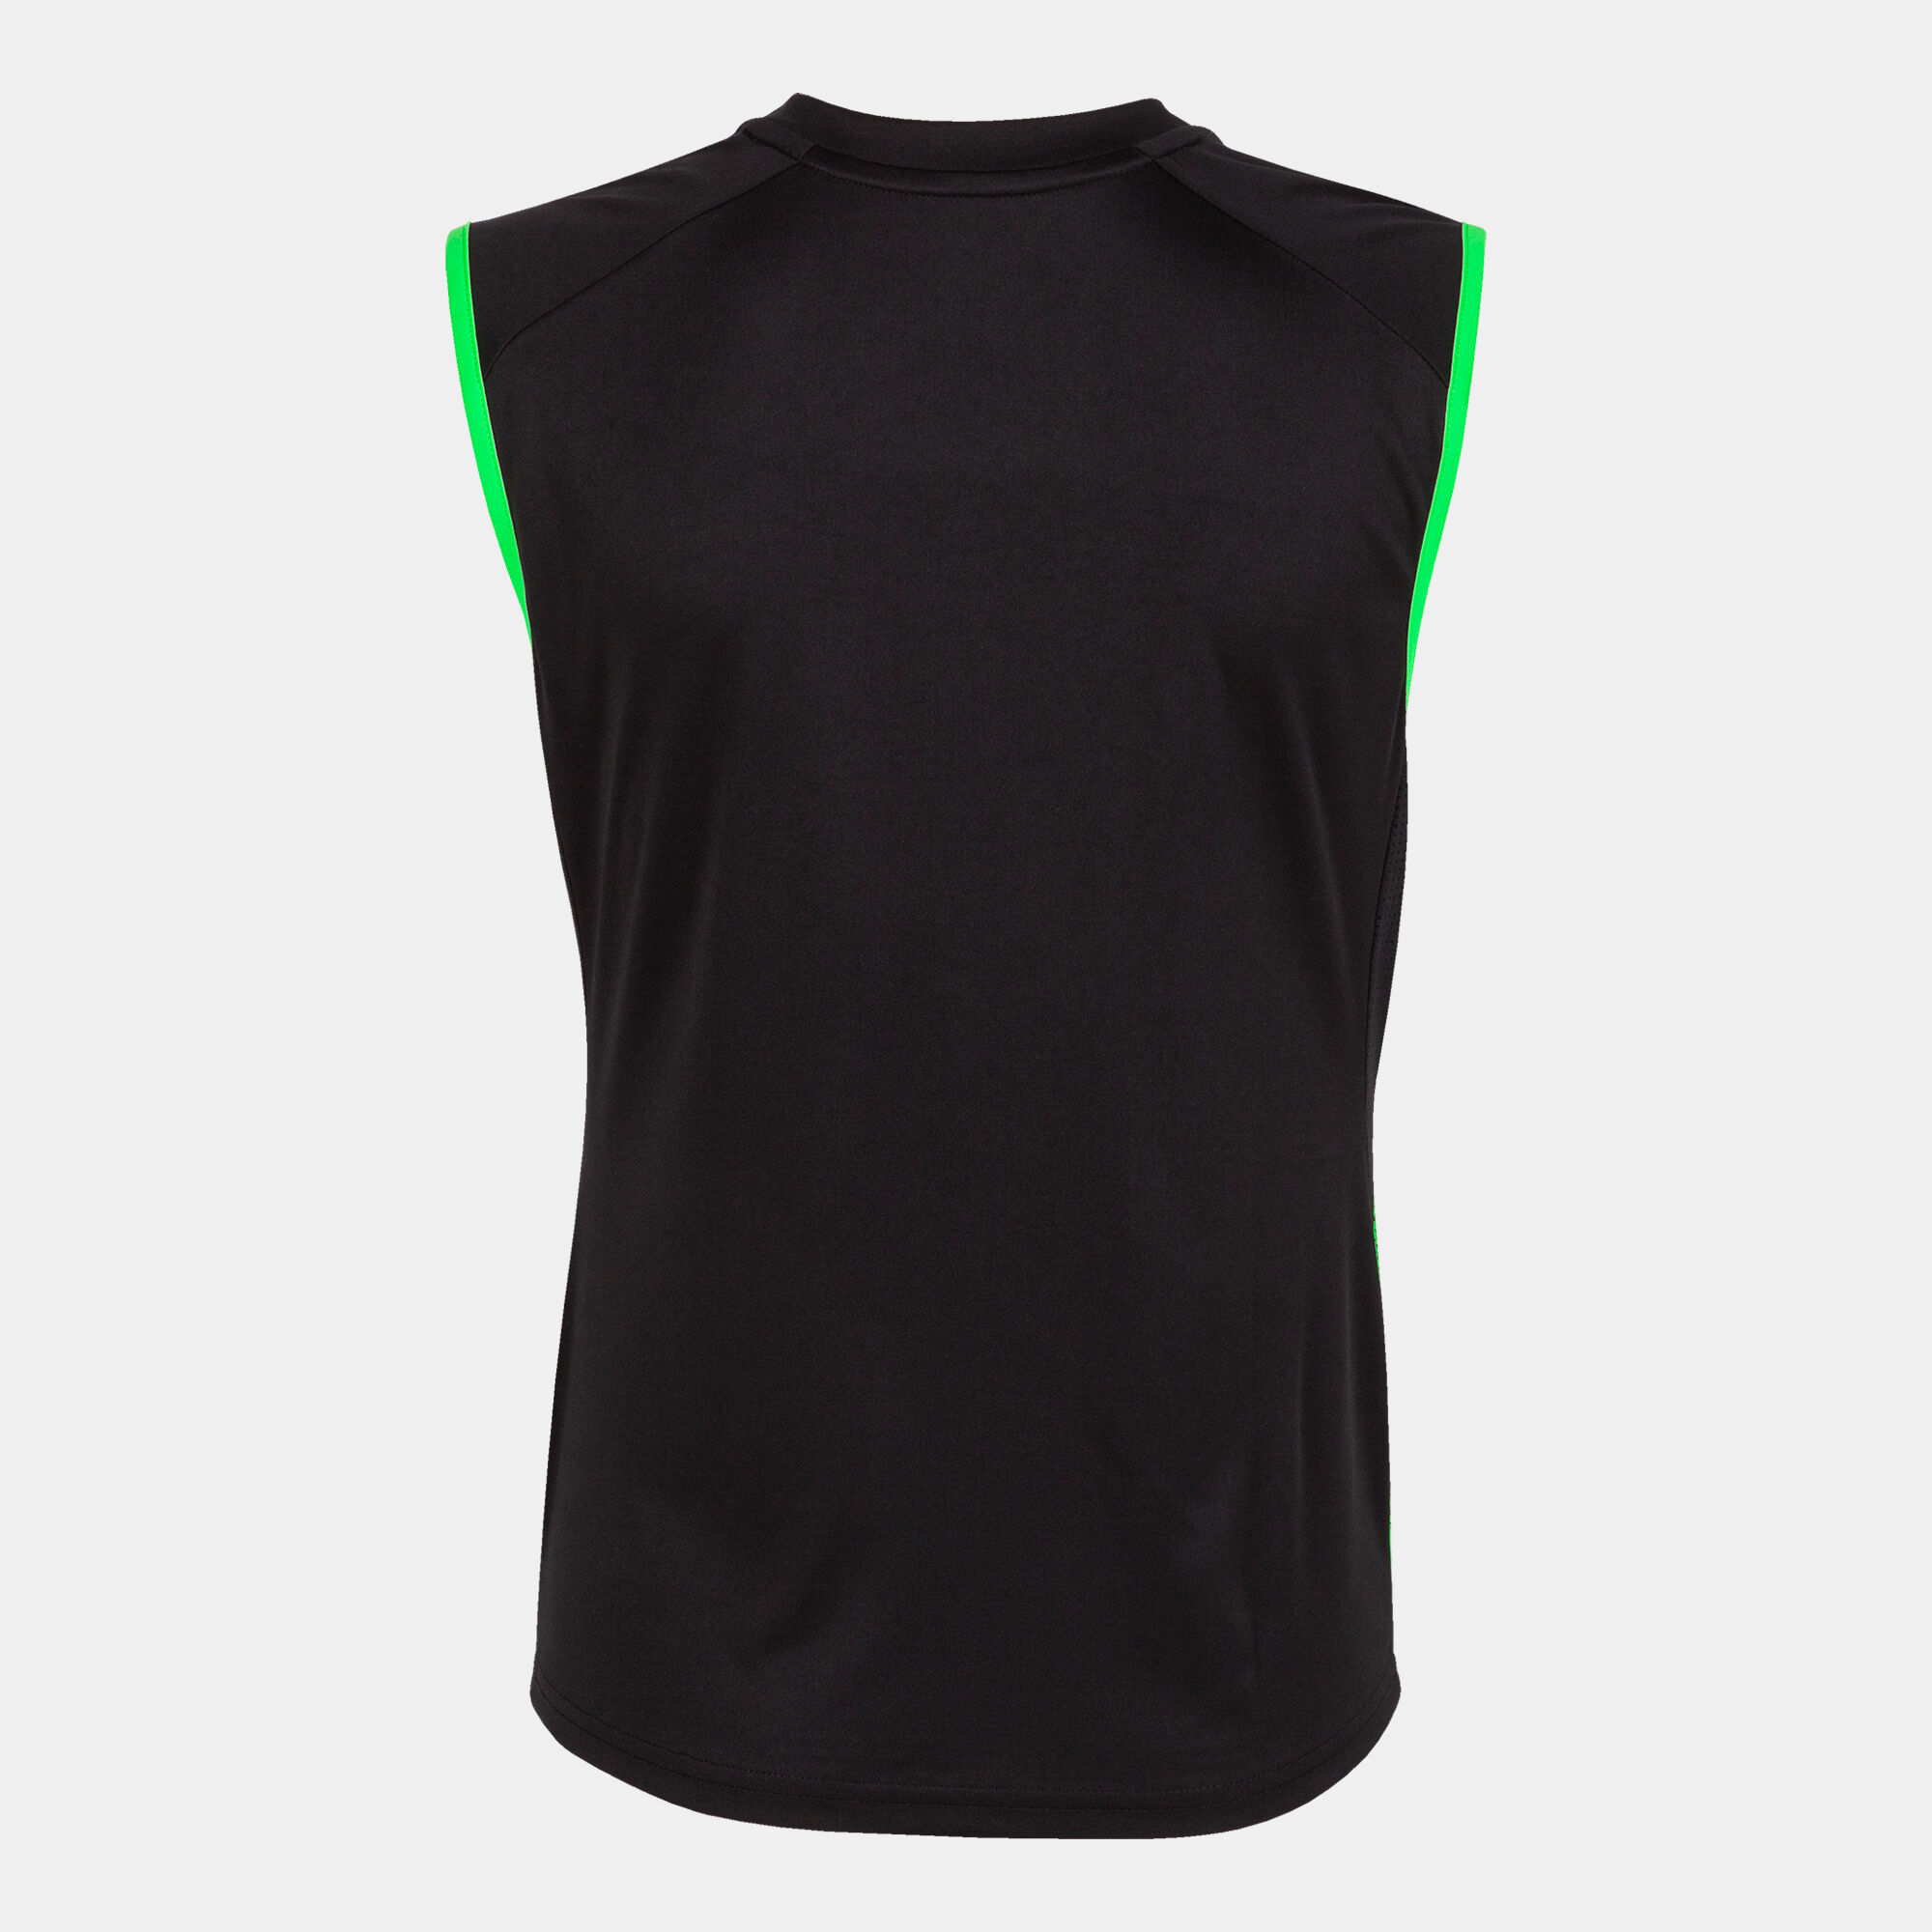 Camiseta sin mangas mujer Supernova III negro verde flúor